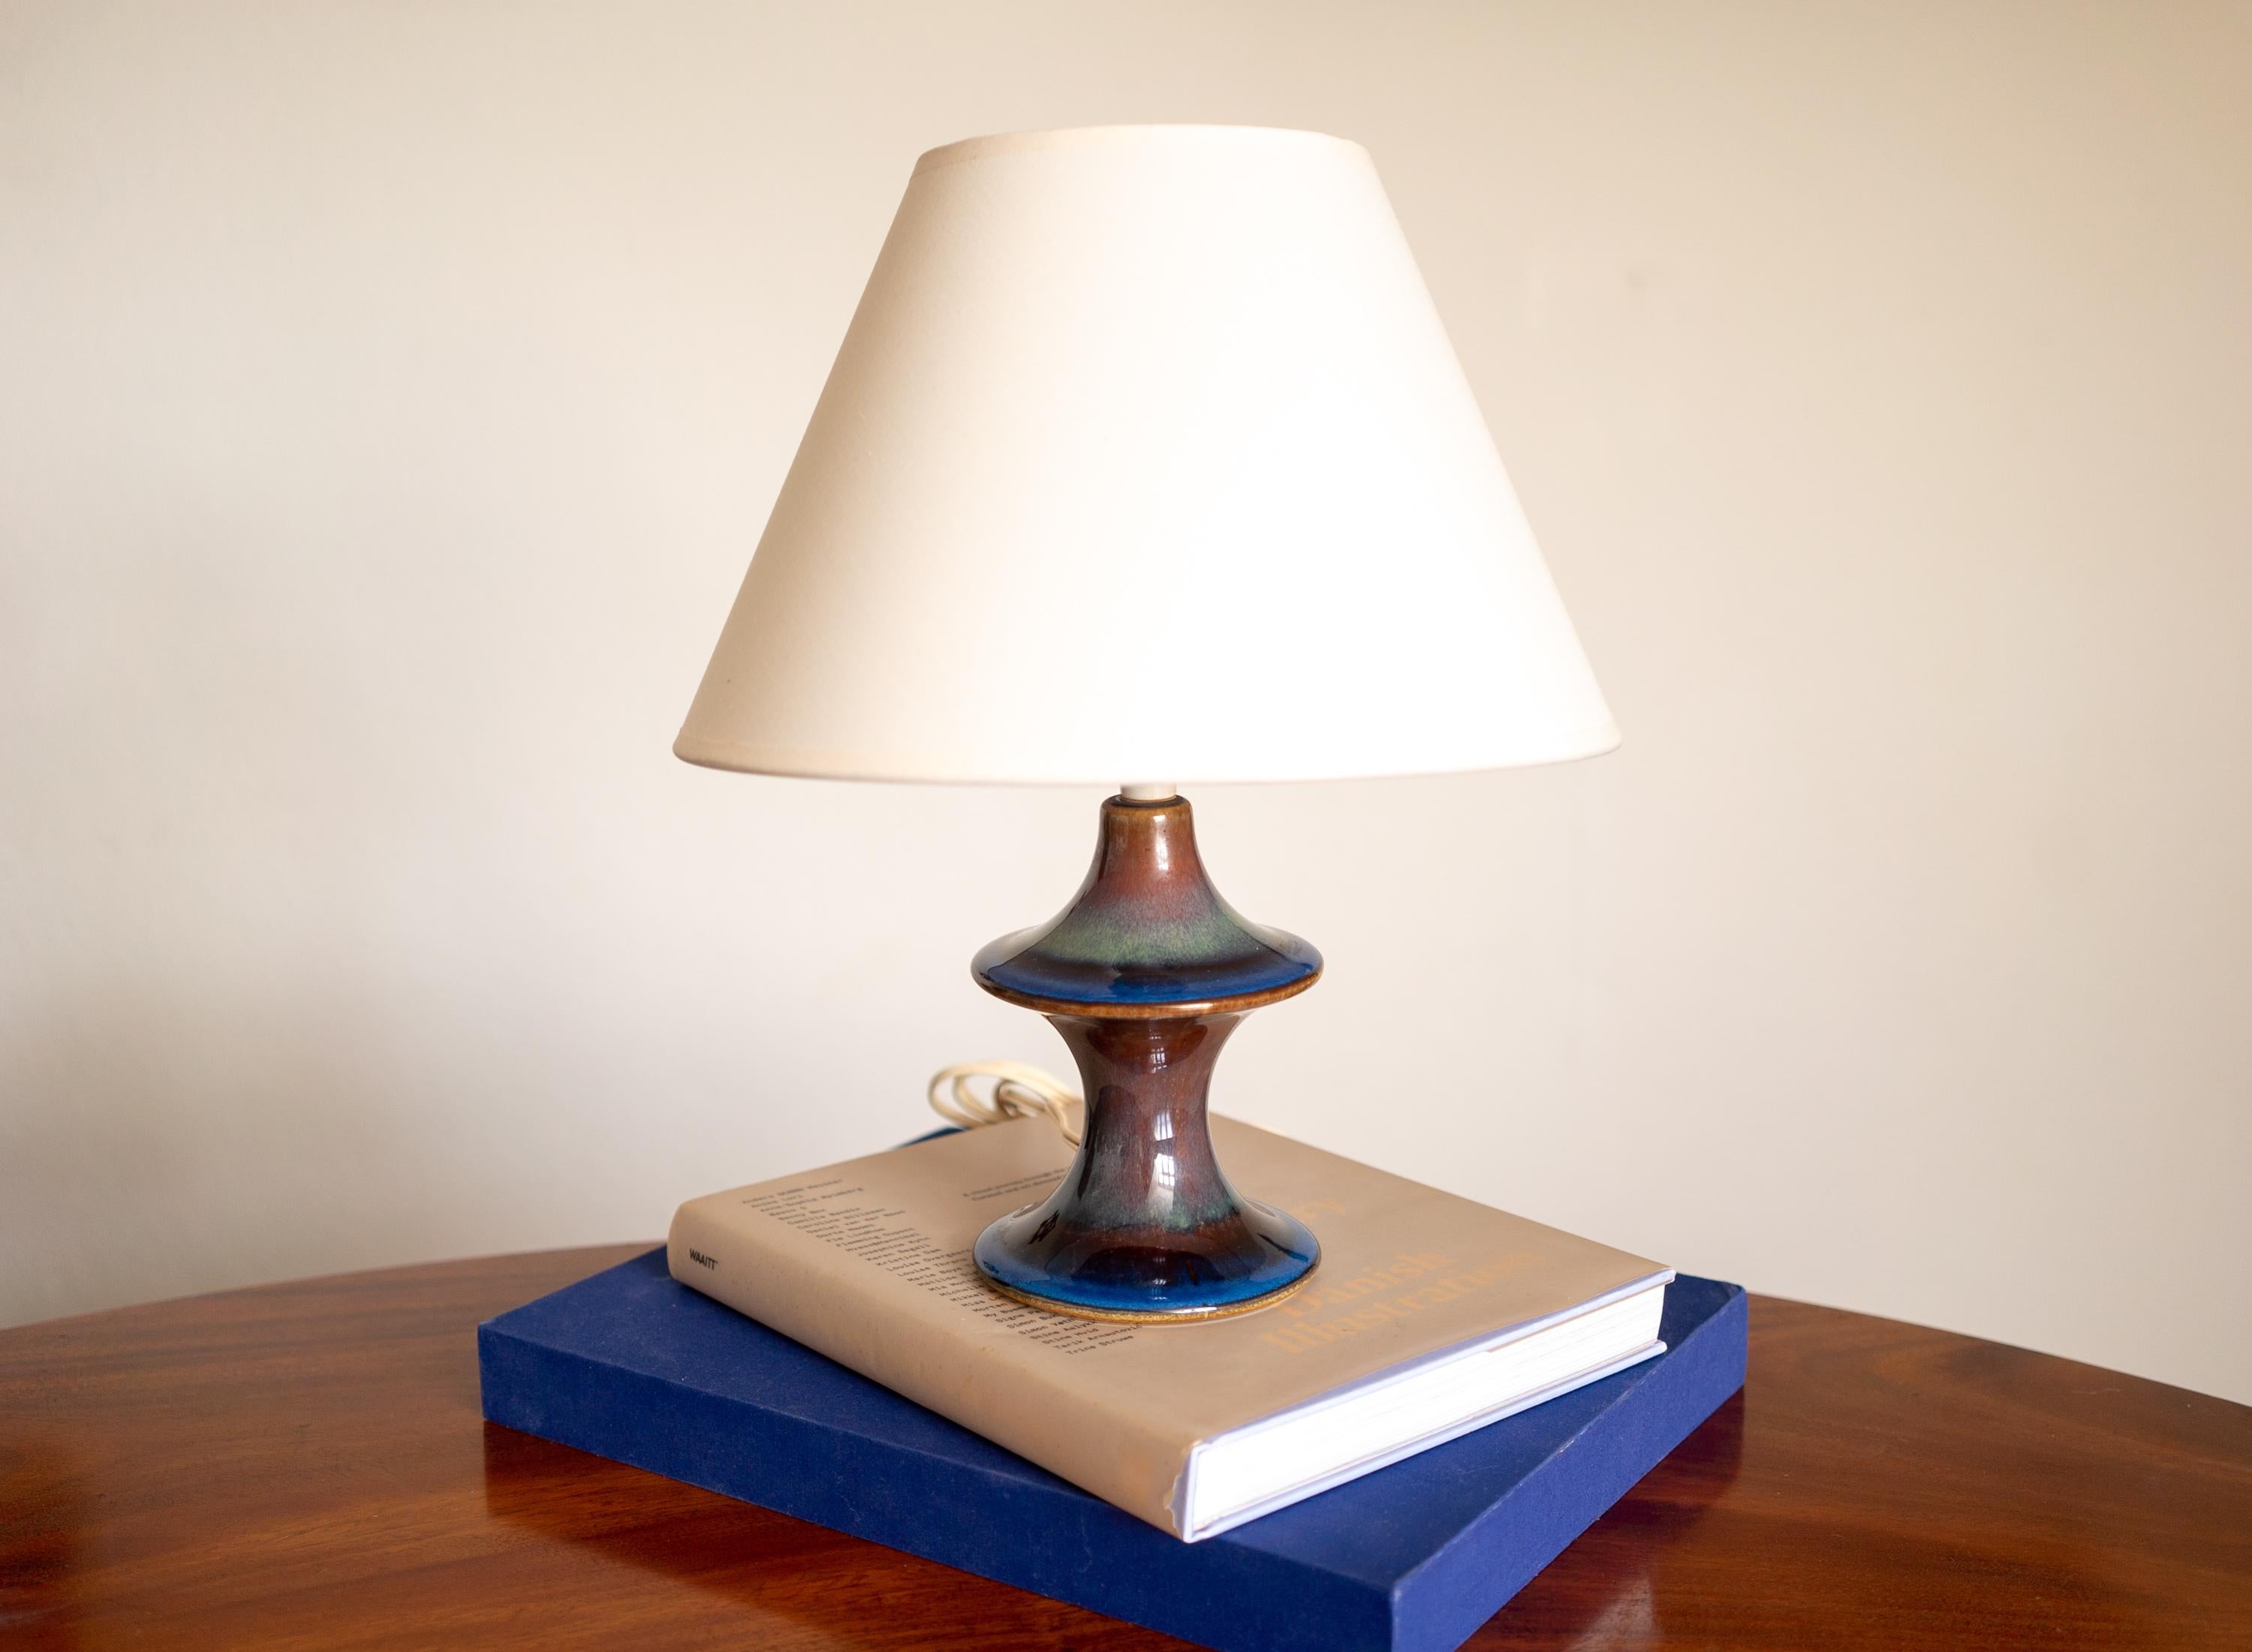 Lampe de table en grès émaillé bleu, conçue et produite par Søholm,  Danemark, années 1970.

Vendu sans abat-jour. Prise européenne.